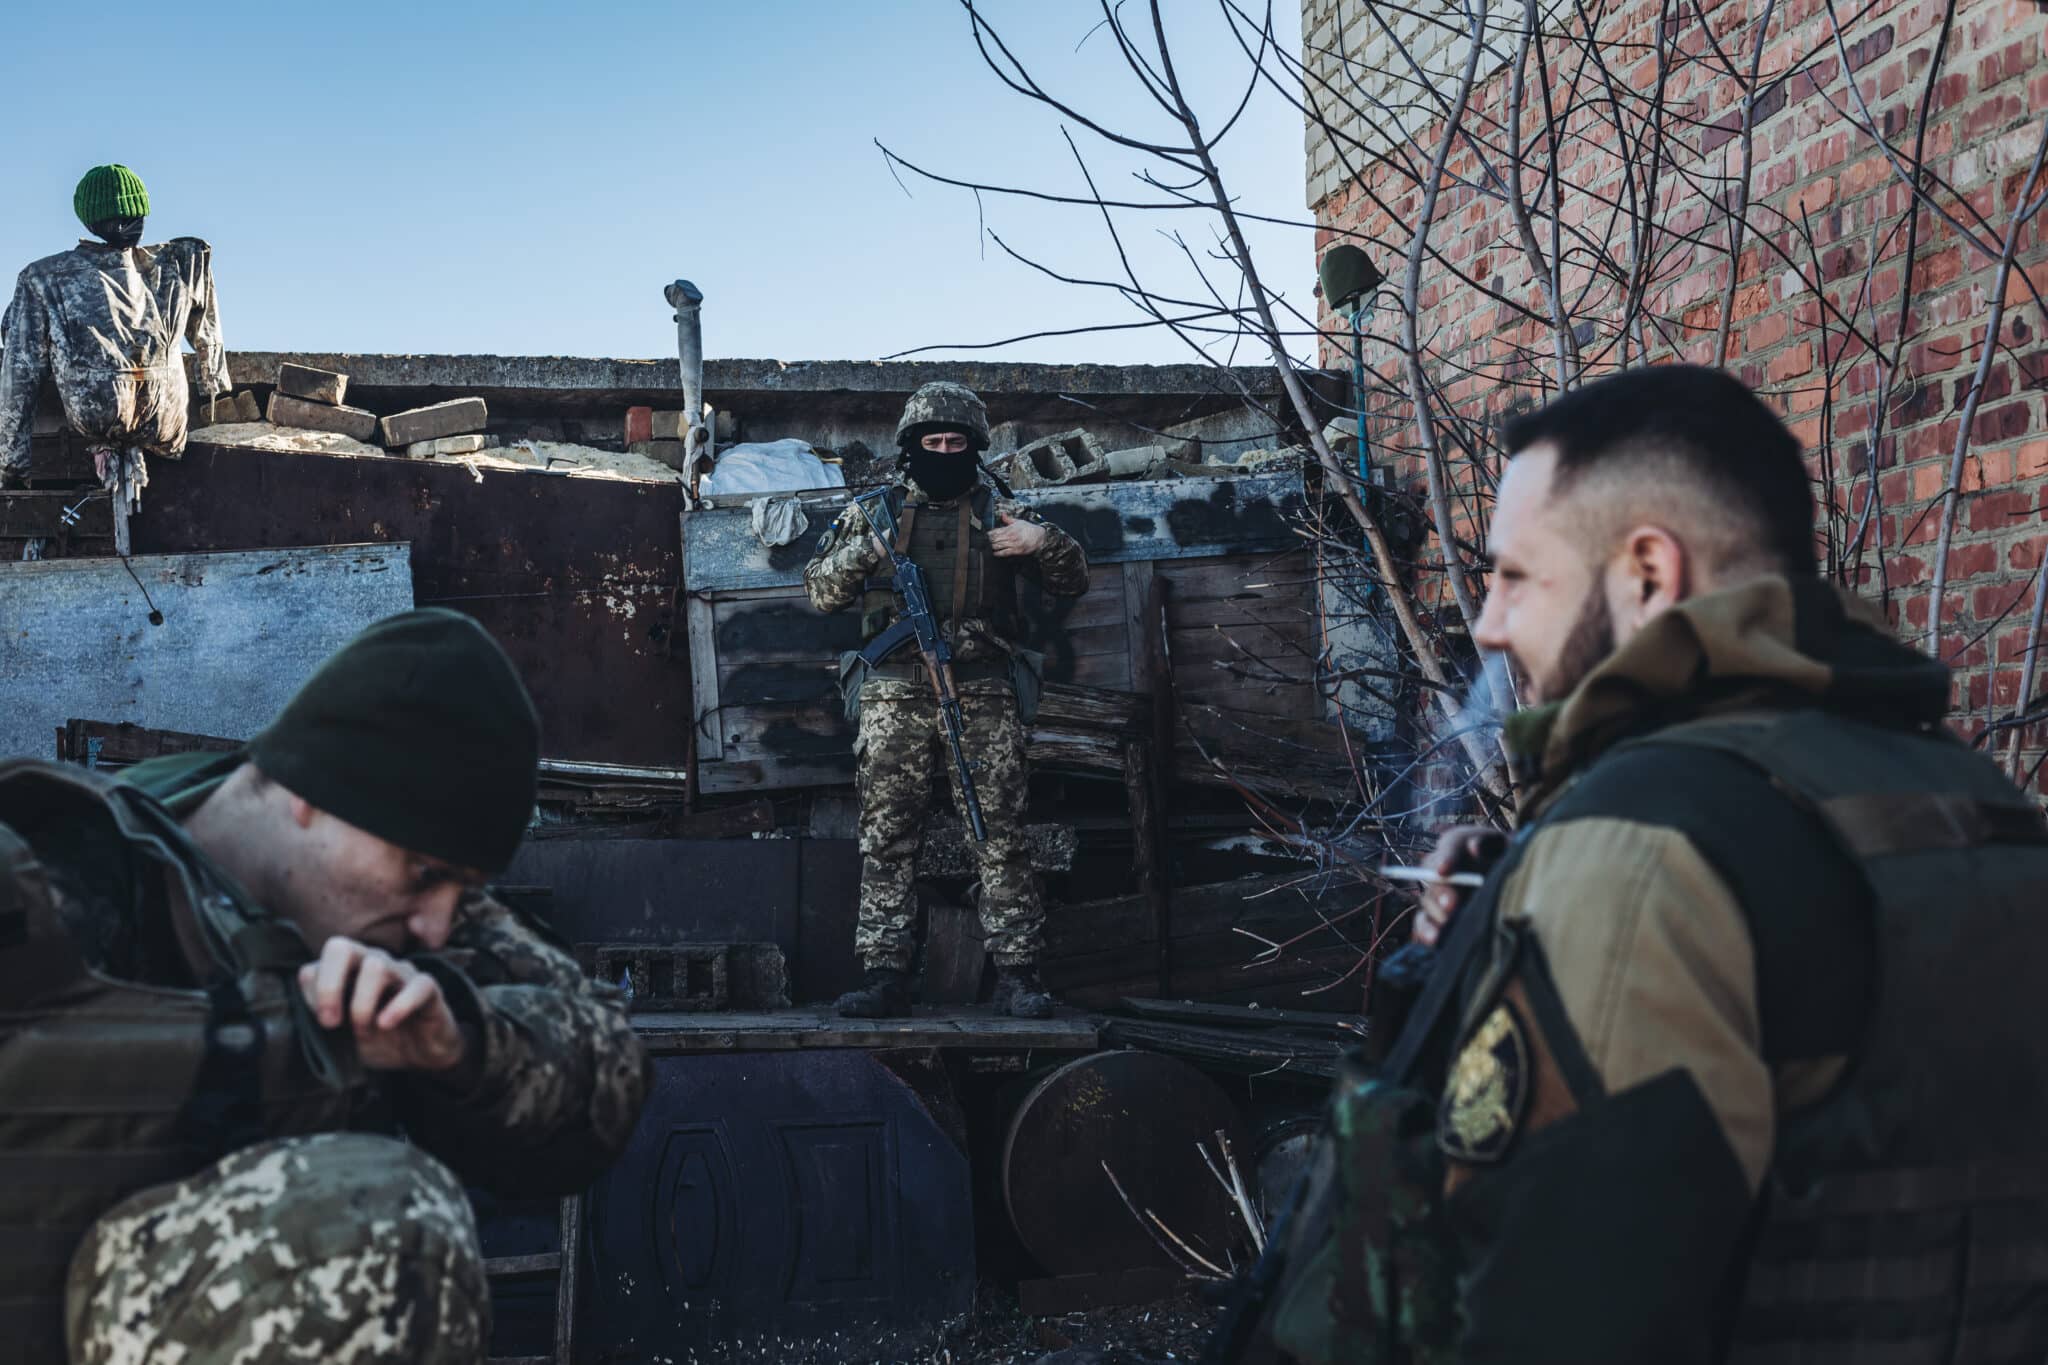 Tres soldados ucranianos en una posición de vigilancia en un pueblo cercano a la línea de contacto, a 15 de febrero de 2022, en Marinka, Oblast de Donetsk (Ucrania).